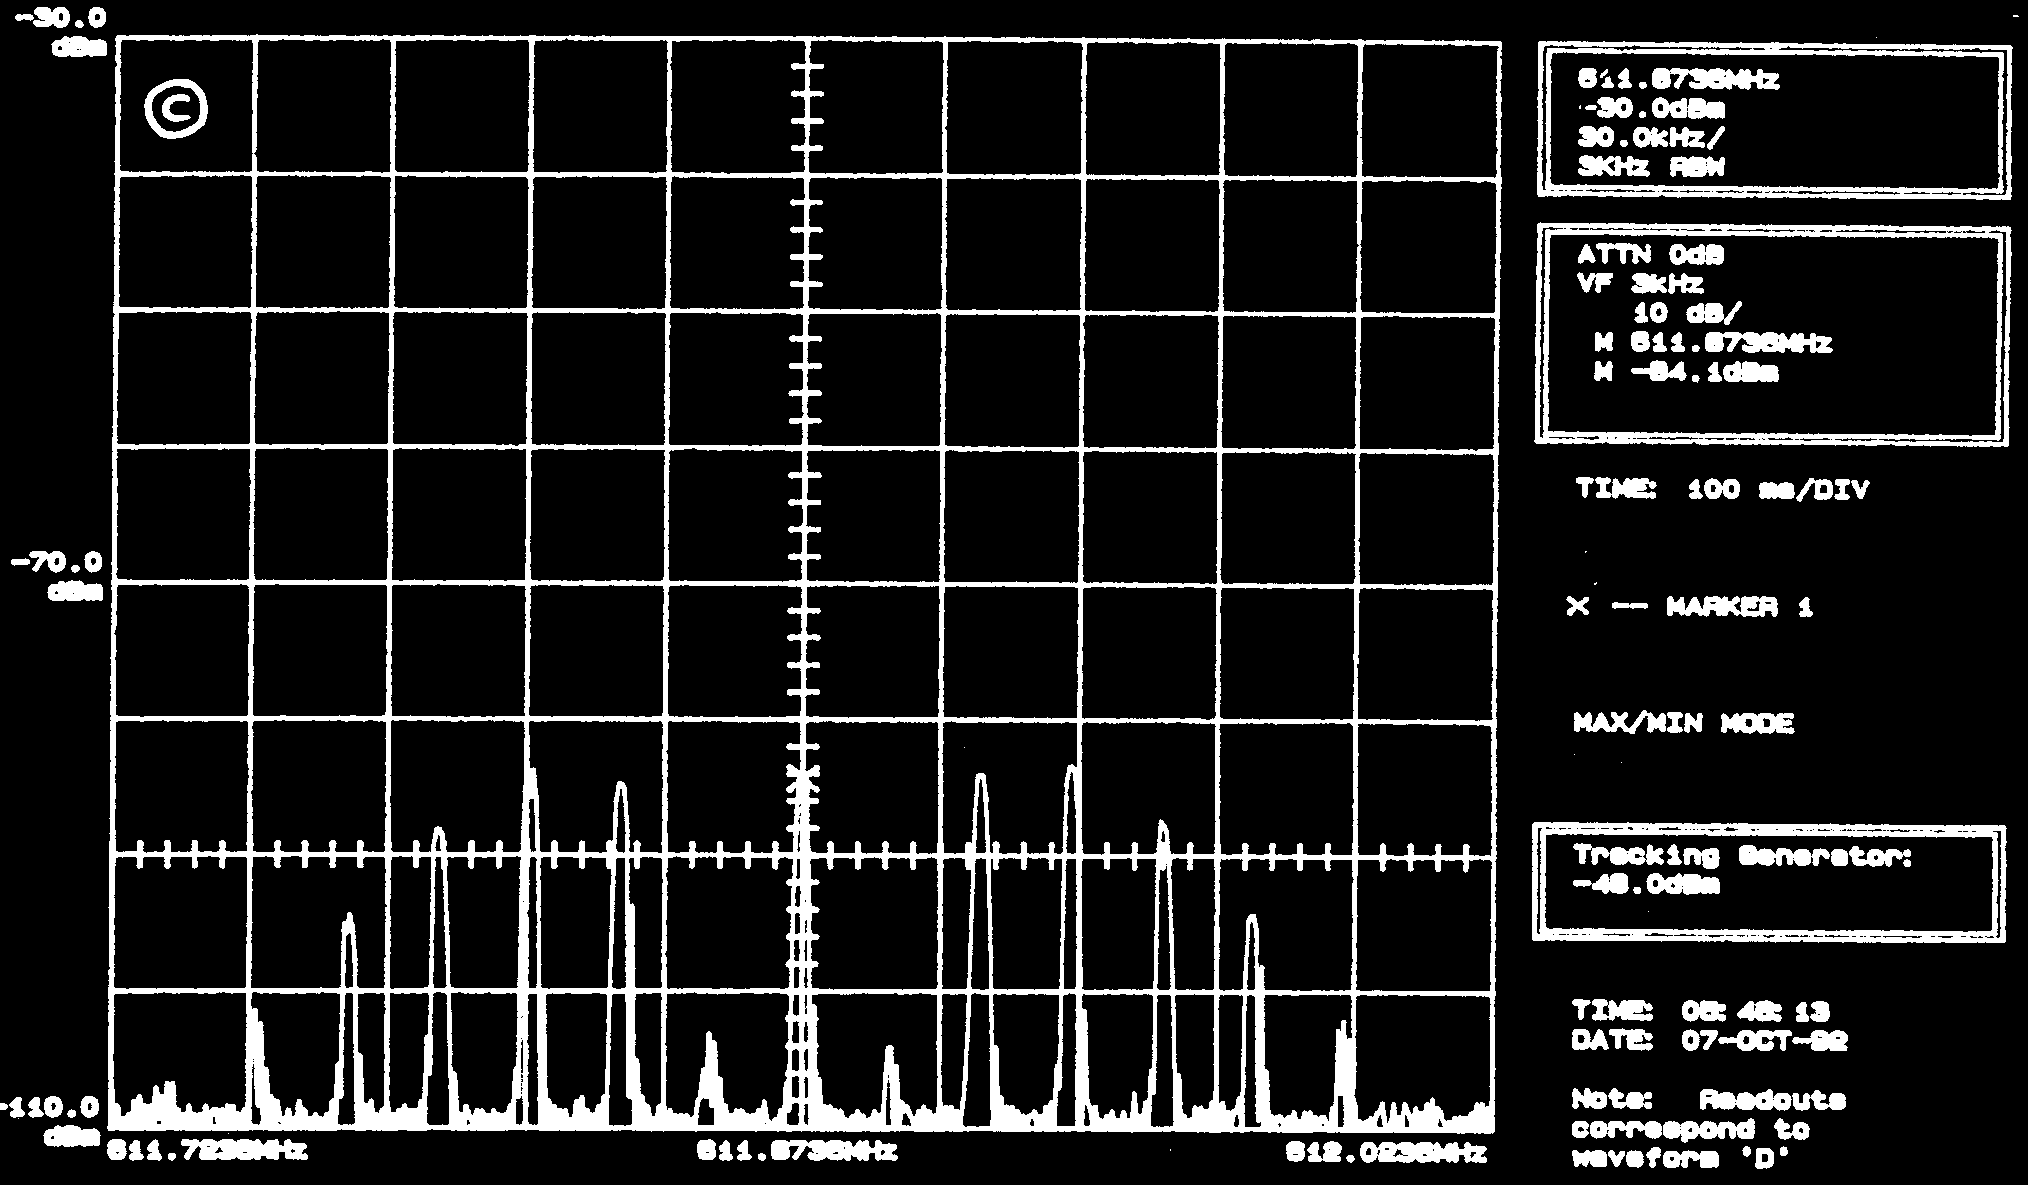 La modulation de fréquence 5 Le spectre d un signal FM modulé par un signal sinusoïdal est le suivant (20kHz/carreau) : a) la porteuse est à une fréquence de 511,87 MHz b) la porteuse est faiblement